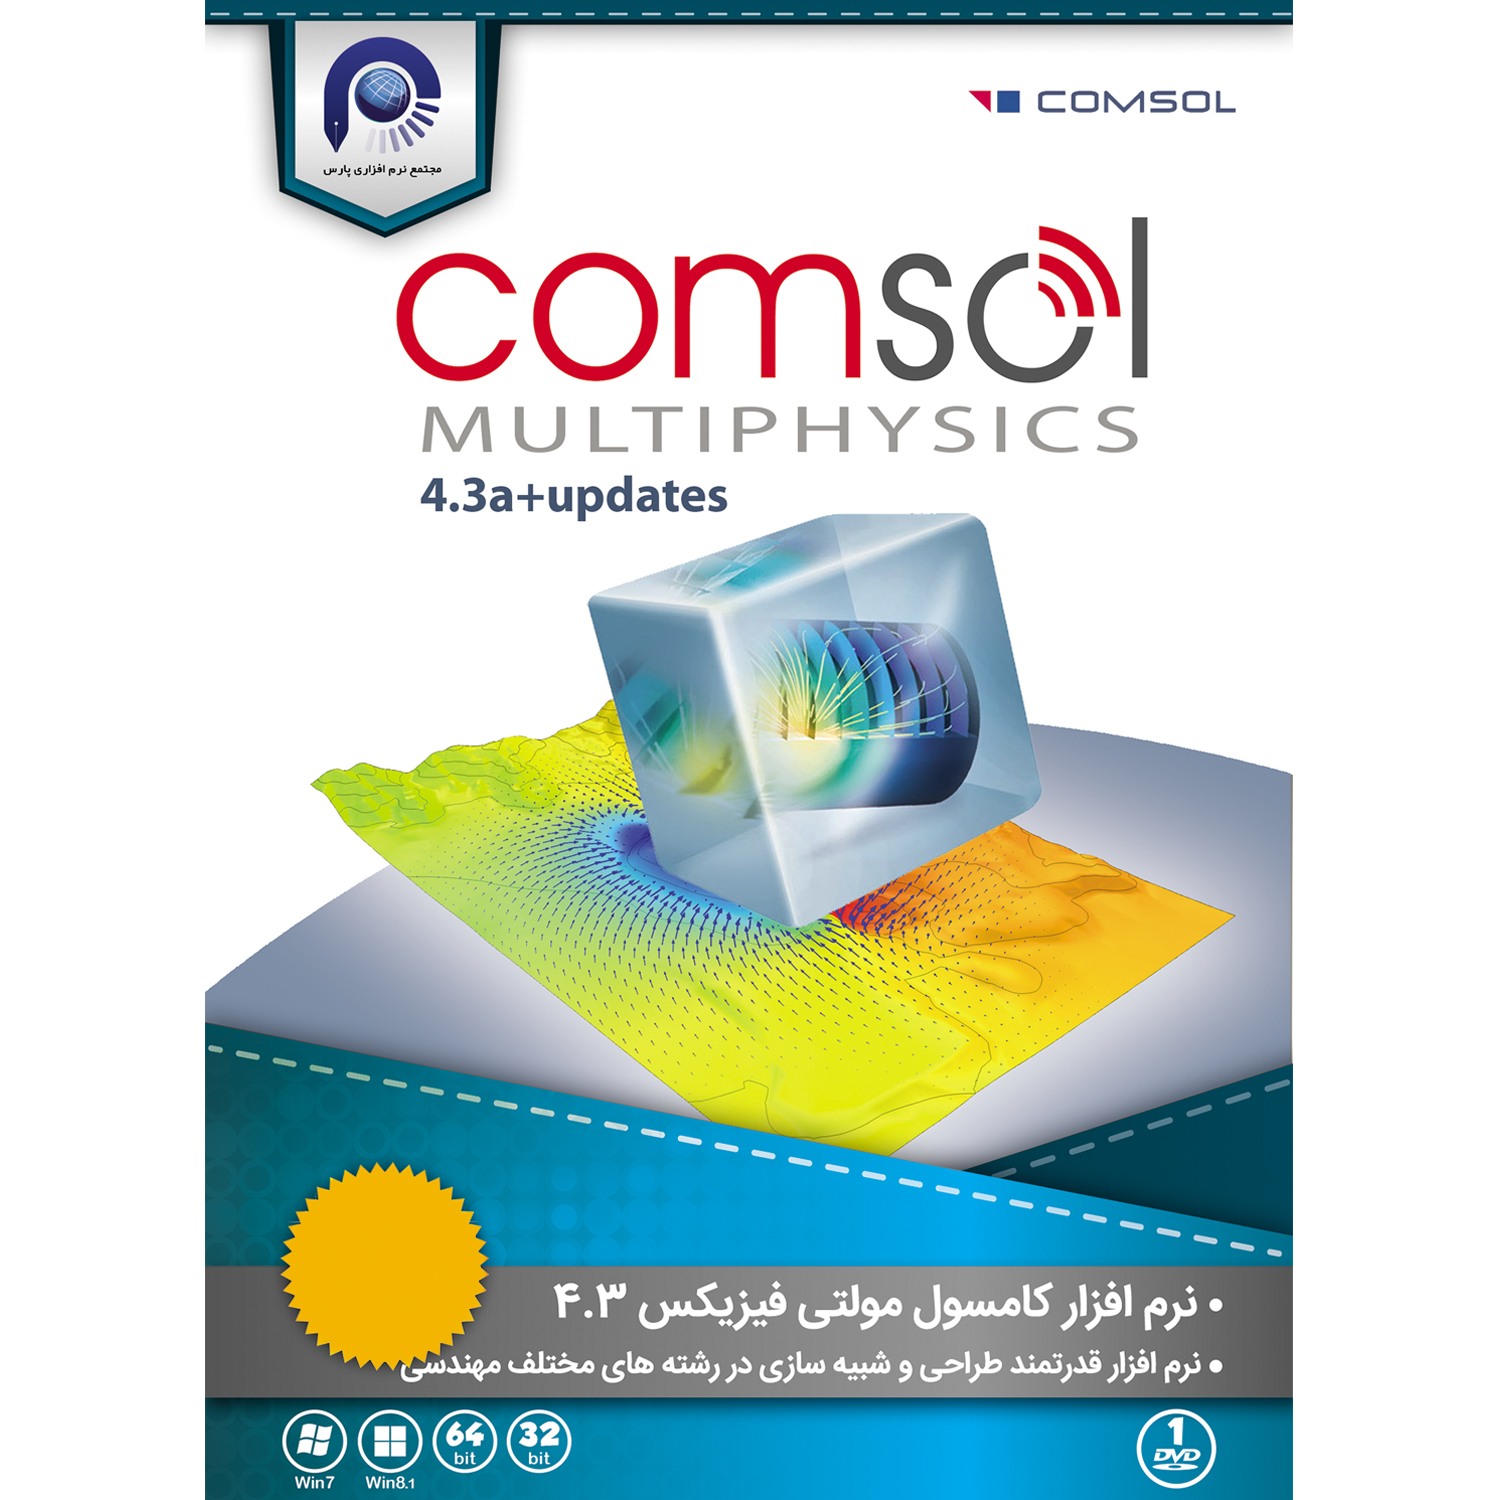 نرم افزار Comsol Multiphysics 4.3  نشر مجتمع نرم افزاری پارس